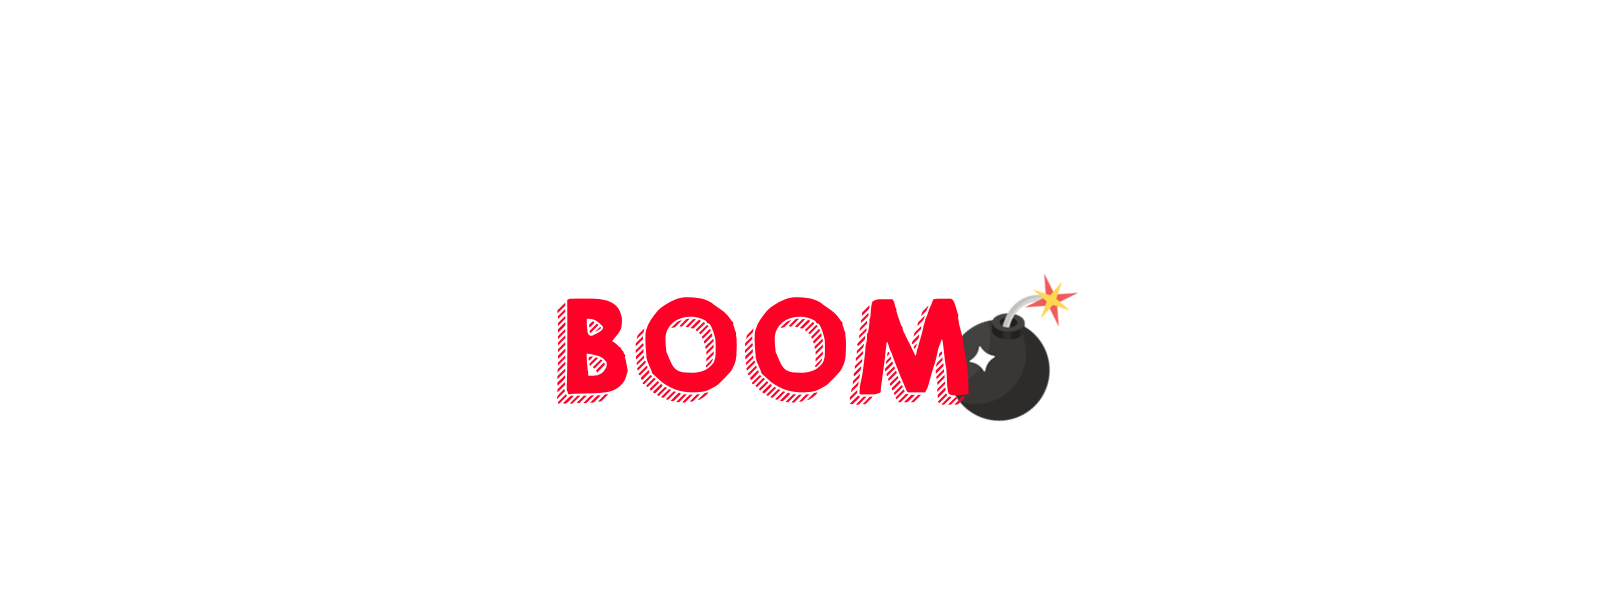 Magnetic Tac BOOM